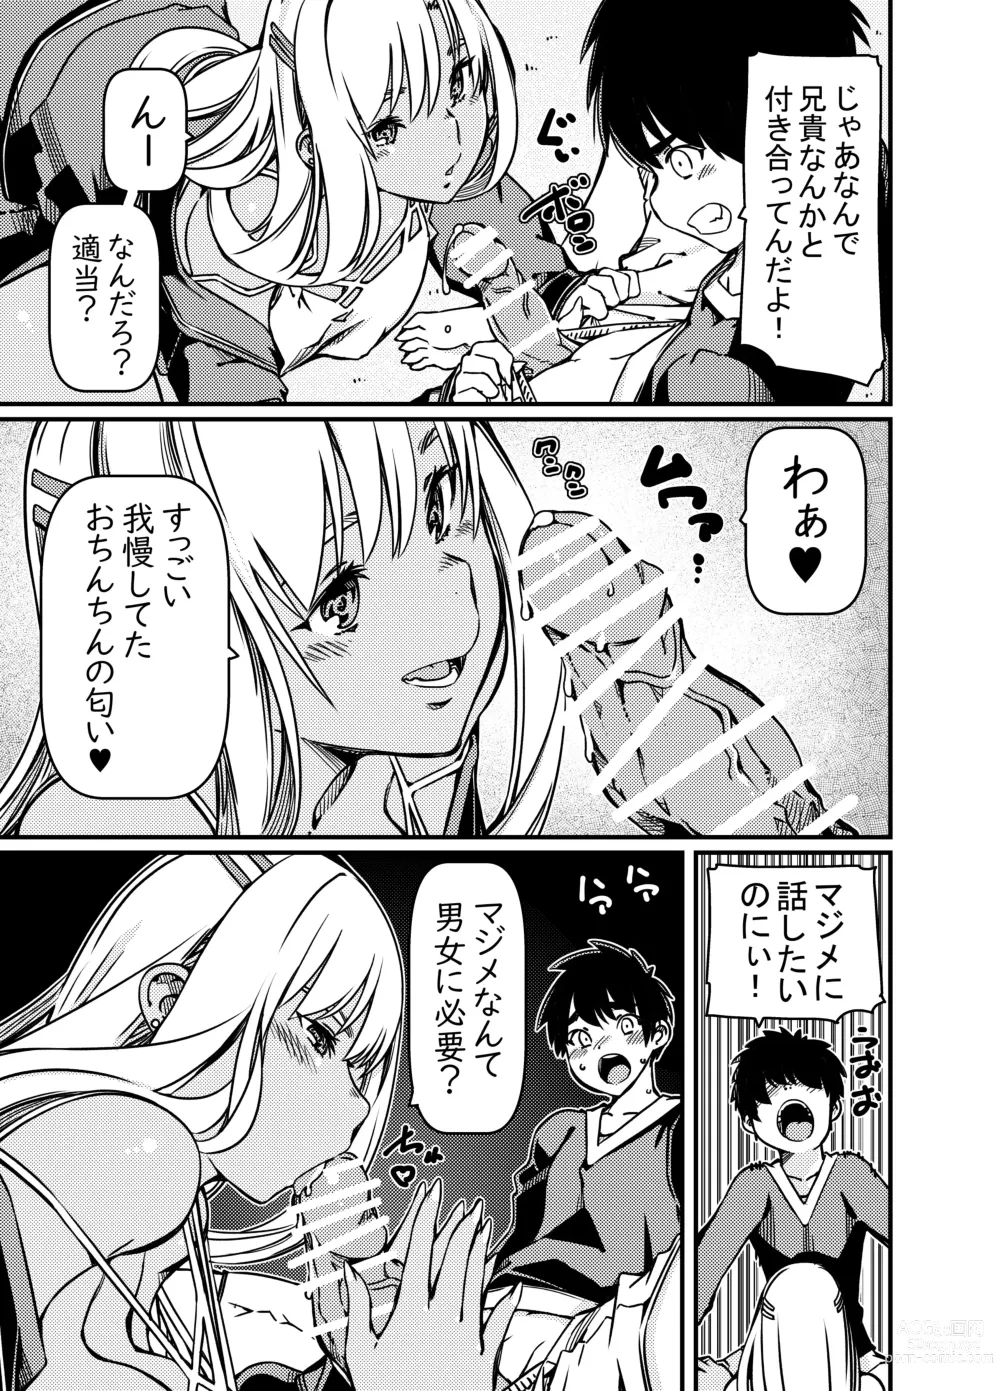 Page 14 of doujinshi Aniki no Kanojo no Kuro Gal to Heya ni Tojikomeraretan dakedo?